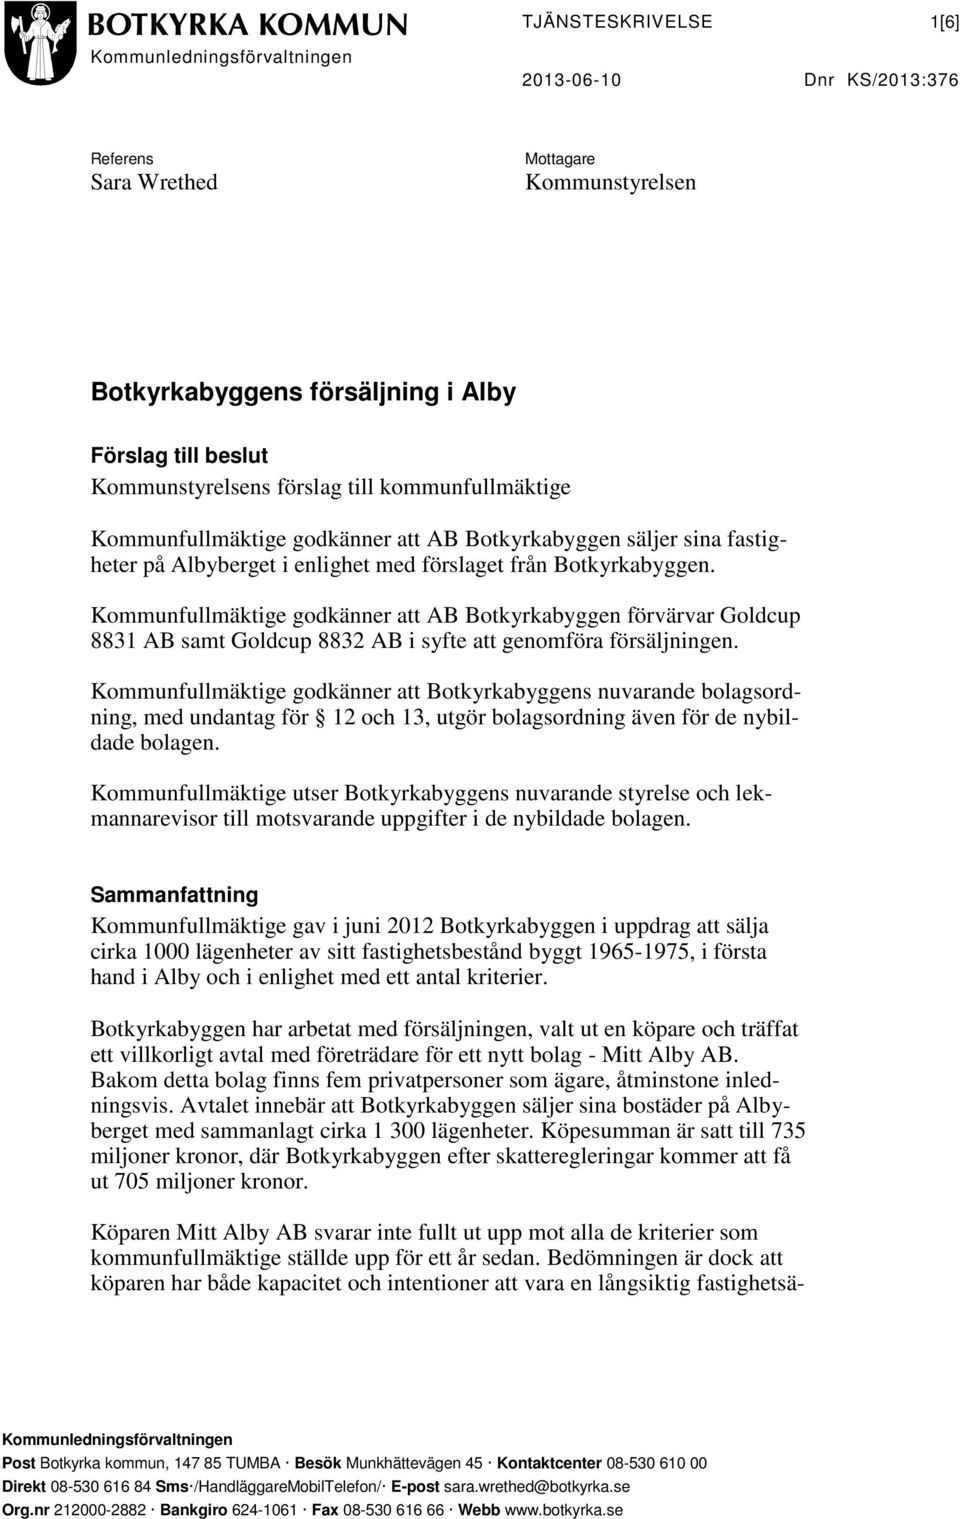 Kommunfullmäktige godkänner att AB Botkyrkabyggen förvärvar Goldcup 8831 AB samt Goldcup 8832 AB i syfte att genomföra försäljningen.